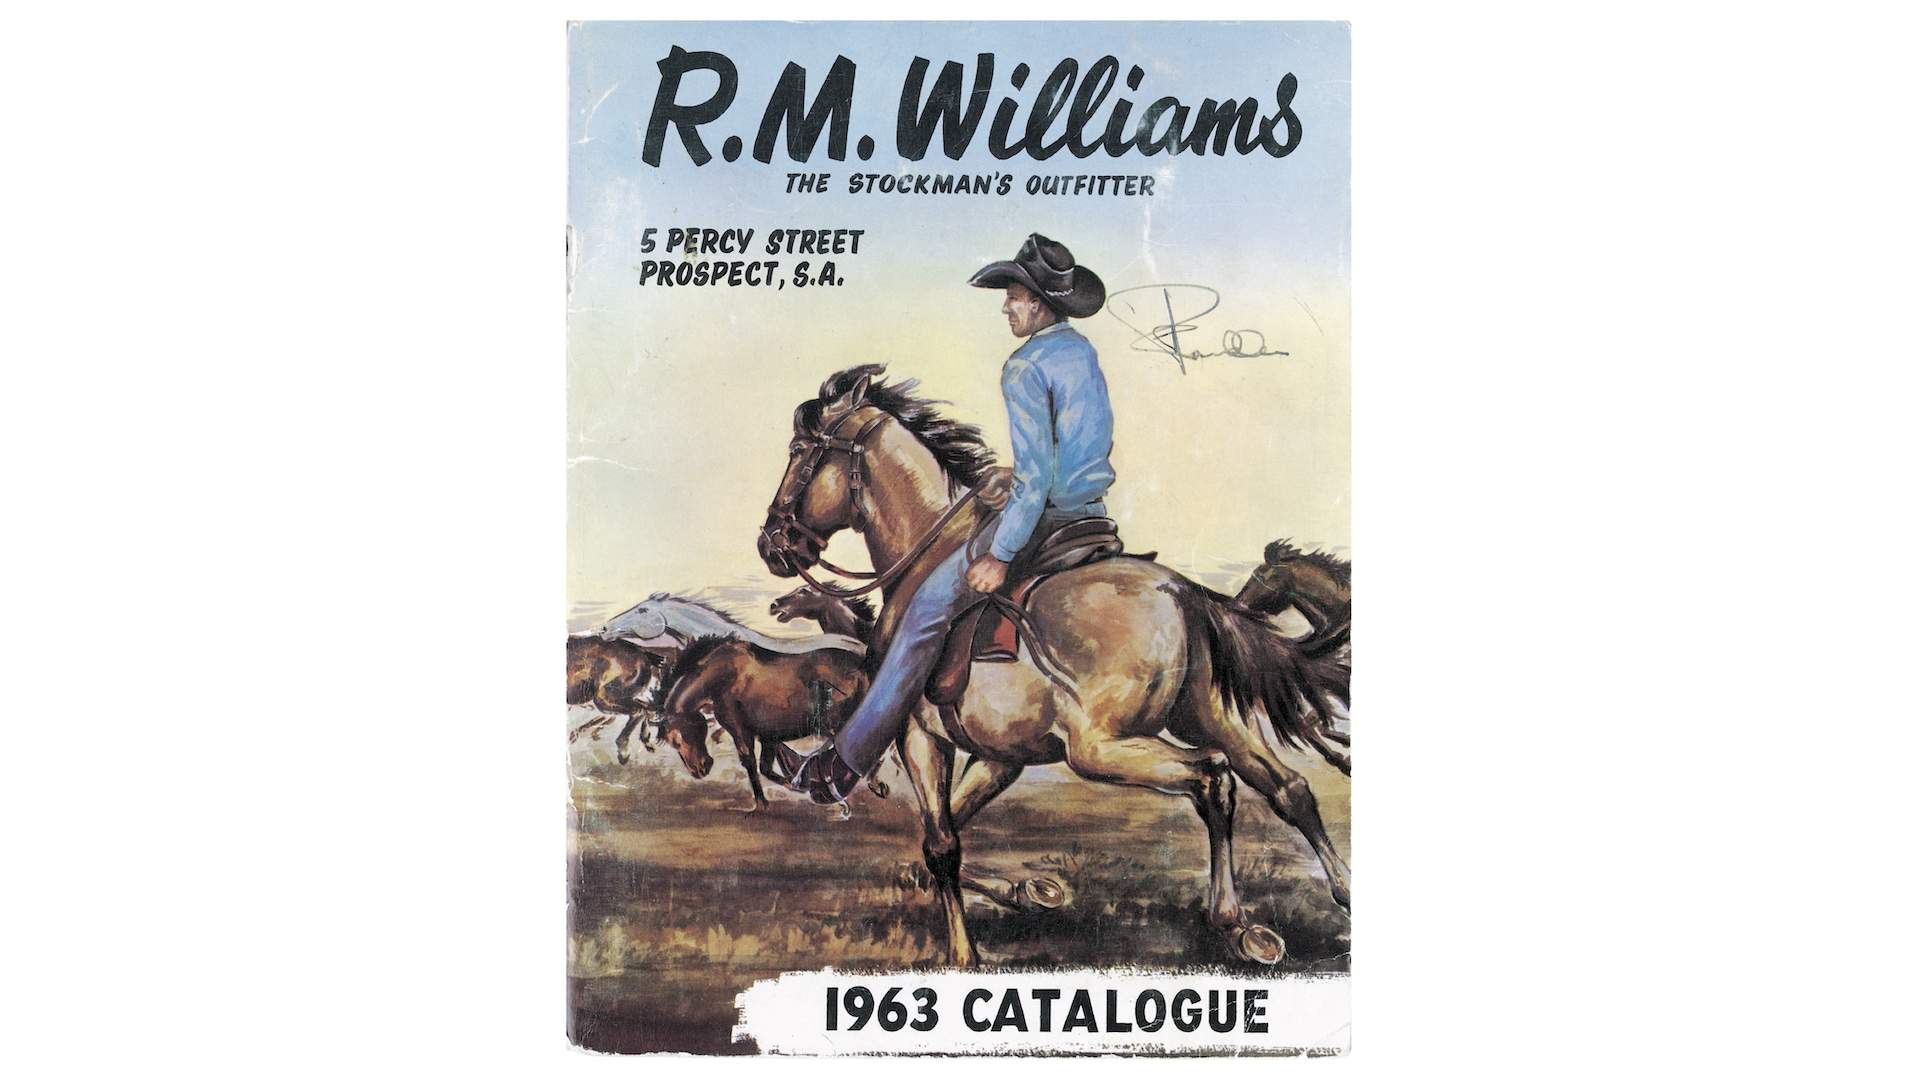 R.M.Williams - In 1940 Reginald Murray Williams introduced